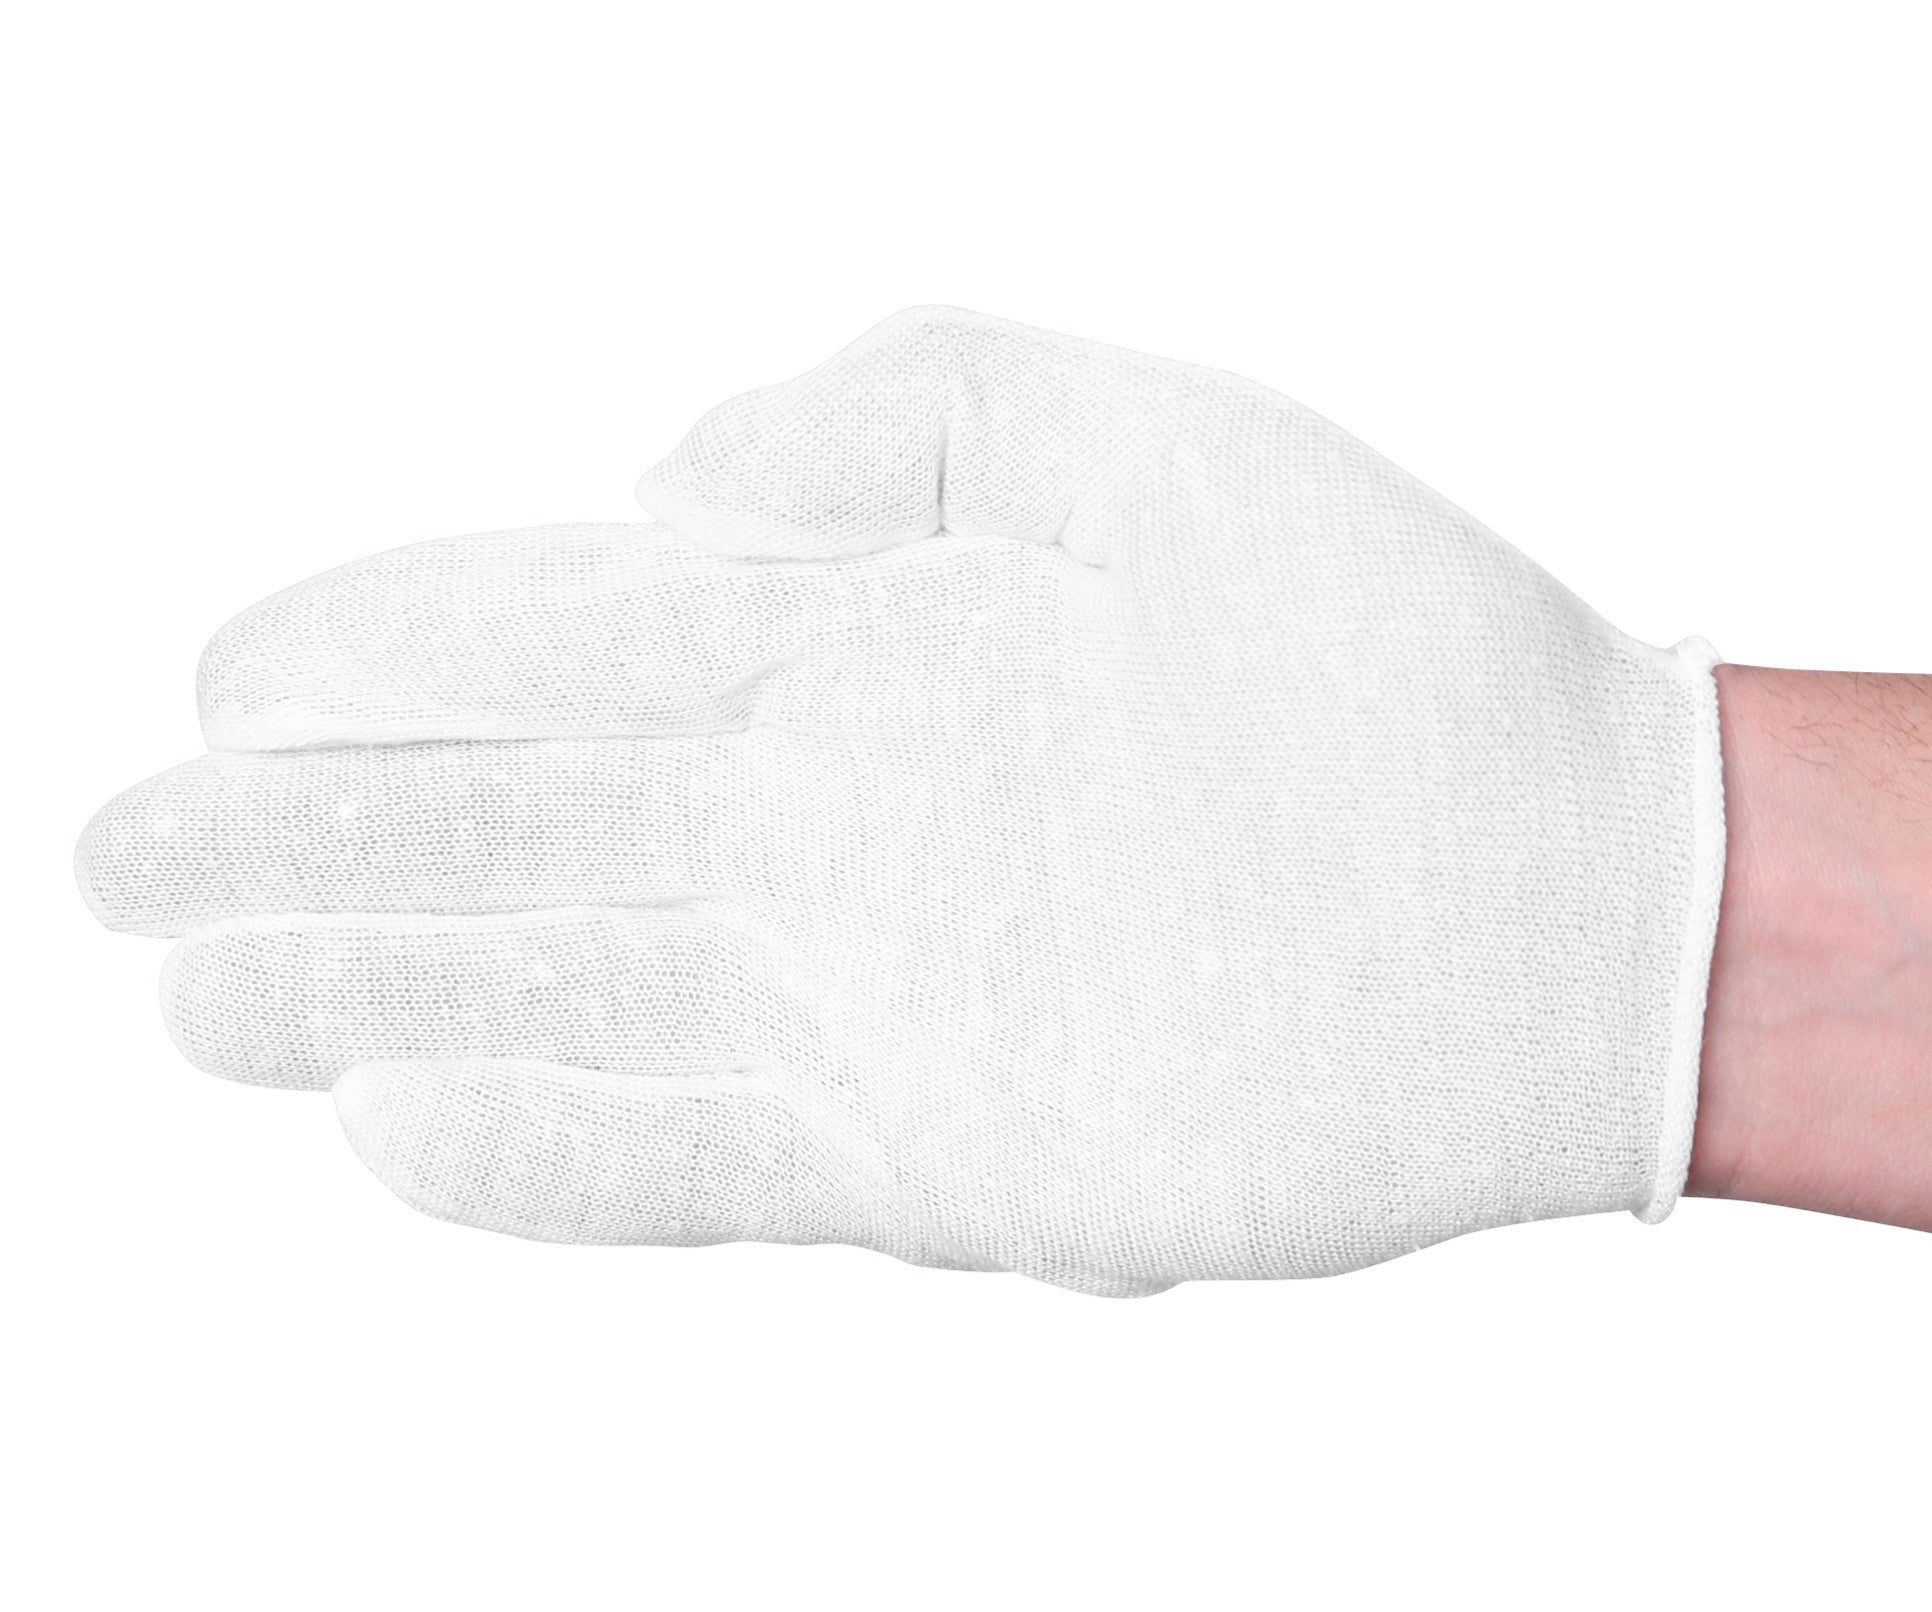 SKVG700 Gloves